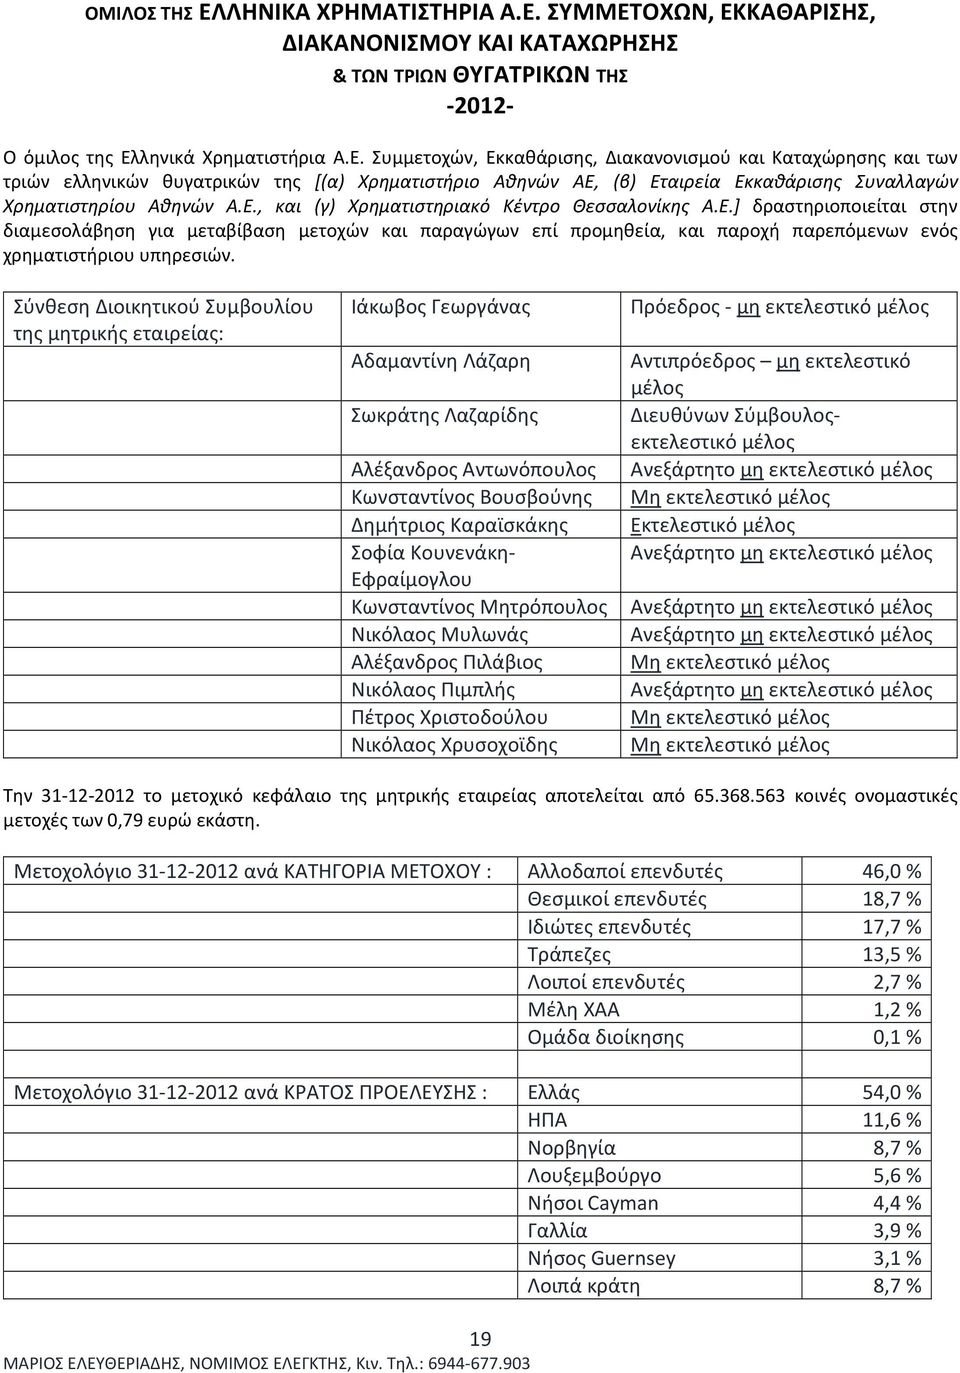 Σύνθεση Διοικητικού Συμβουλίου της μητρικής εταιρείας: Ιάκωβος Γεωργάνας Πρόεδρος - μη εκτελεστικό μέλος Αδαμαντίνη Λάζαρη Αντιπρόεδρος μη εκτελεστικό μέλος Σωκράτης Λαζαρίδης Διευθύνων